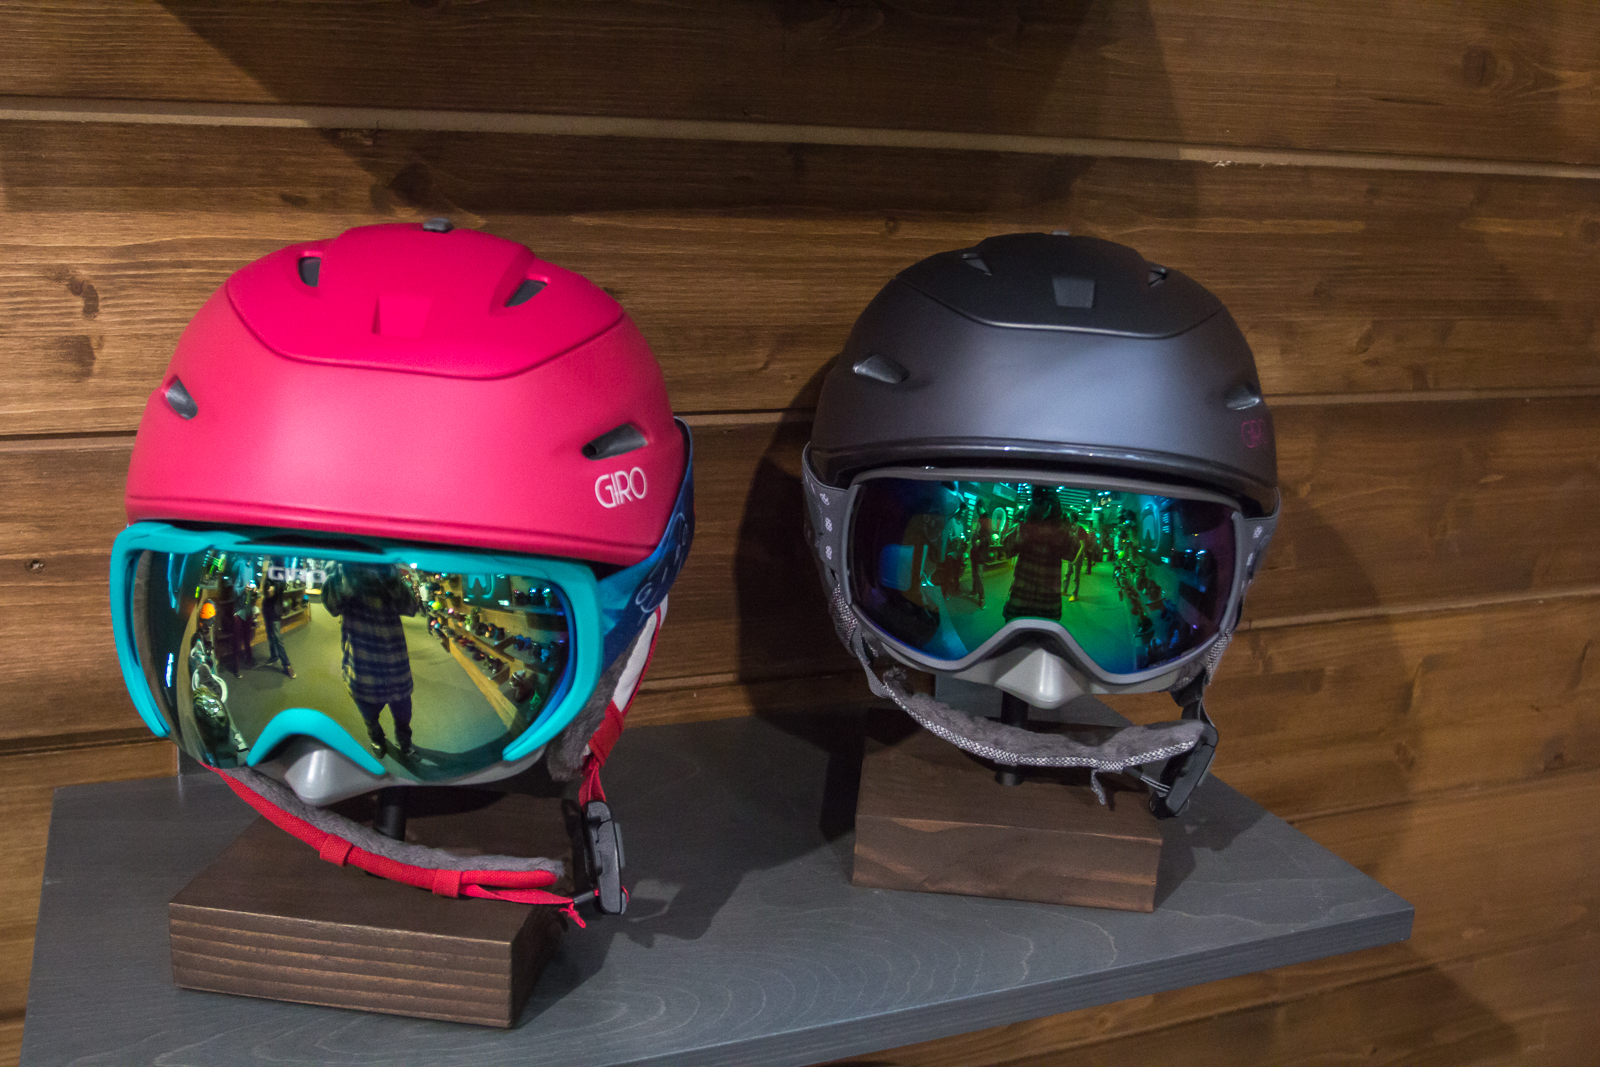 Sehen nicht nur schick aus, sondern bieten auch jede Menge Funktionen: Die neuen Giro Helmets und Goggles